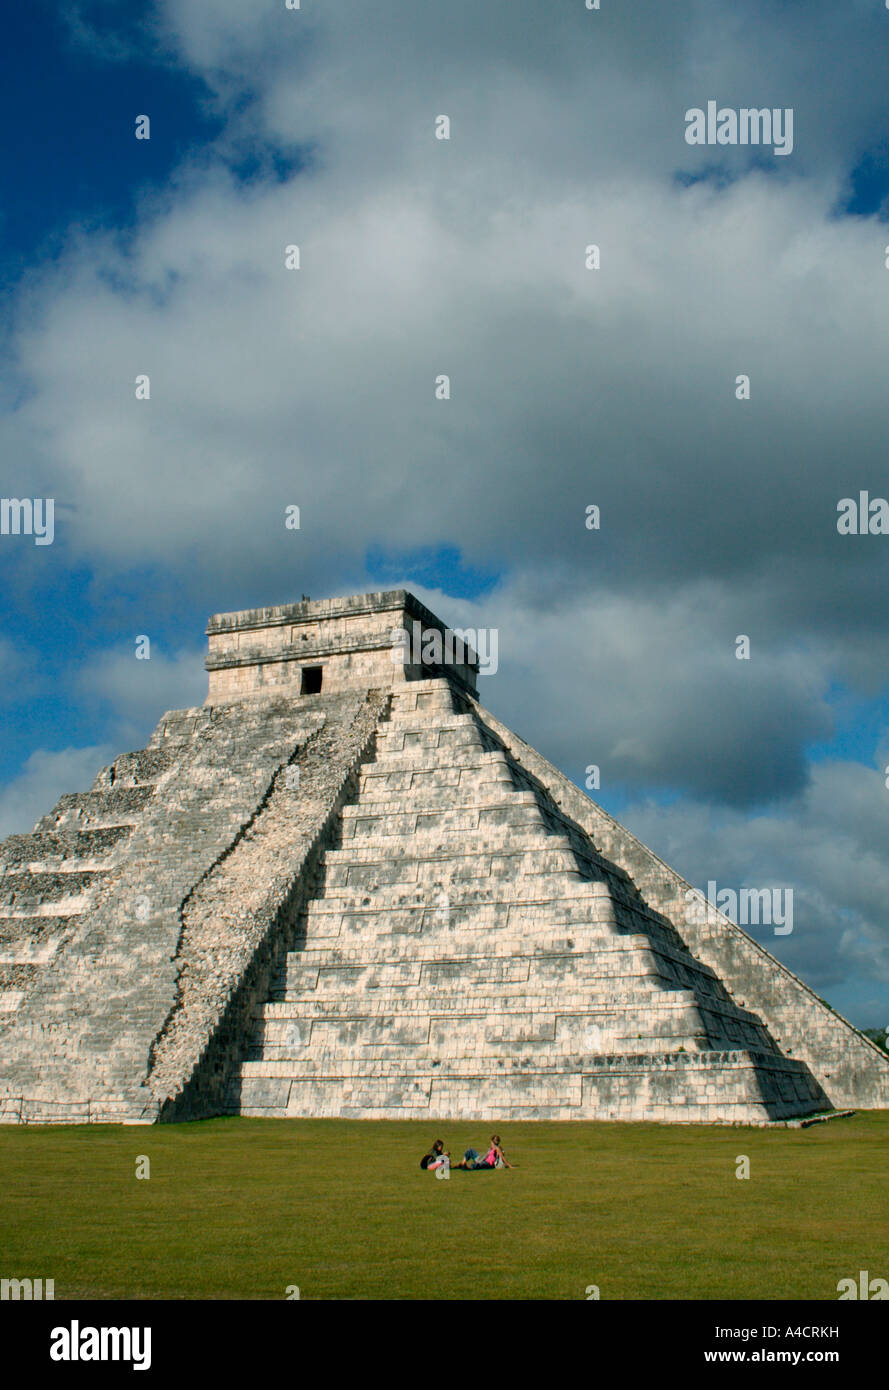 Tempel des Kukulcan, höchste Bauwerk von den Maya in Yucatán. Vier Treppen führen an die Spitze, eine für die Öffentlichkeit zugänglich. Stockfoto